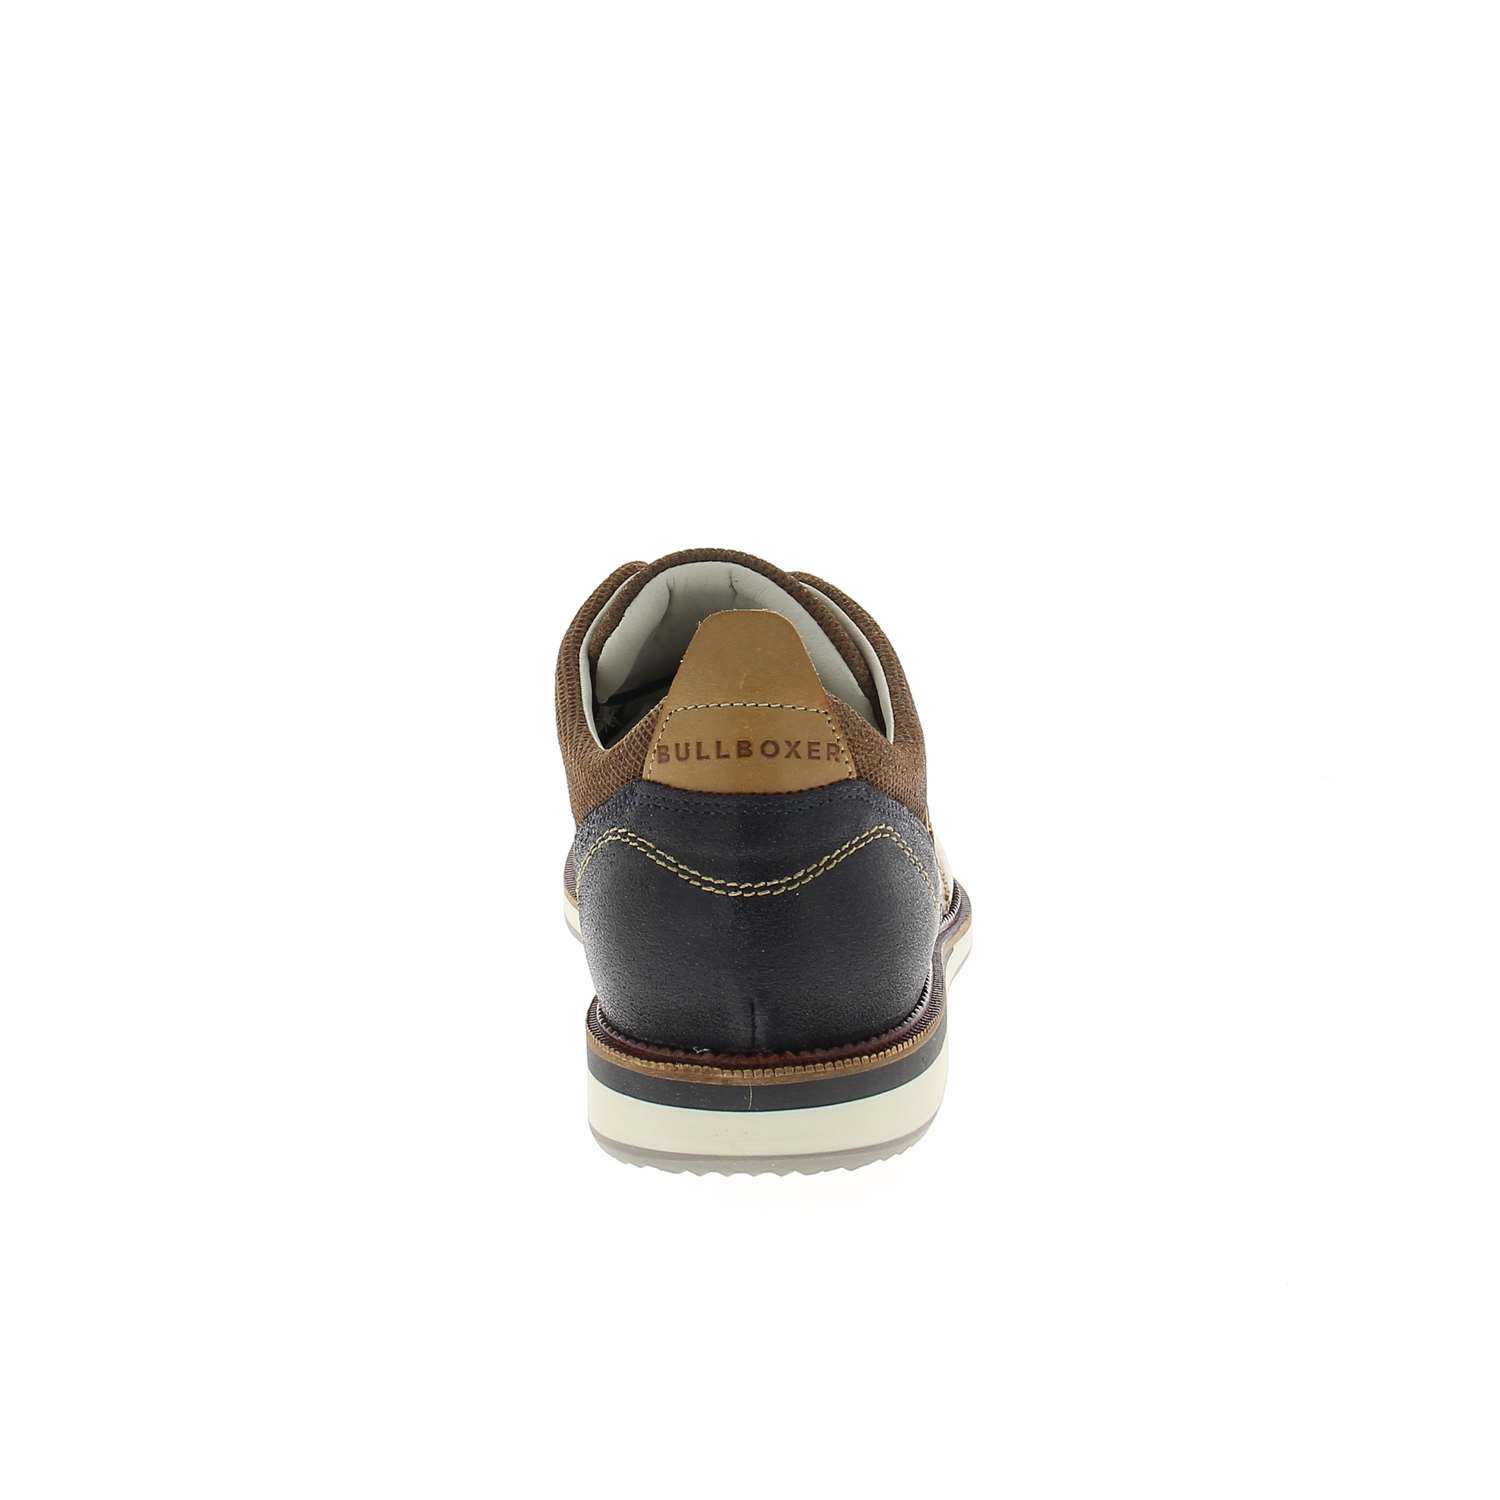 04 - APRILIA - BULLBOXER - Chaussures à lacets - Cuir